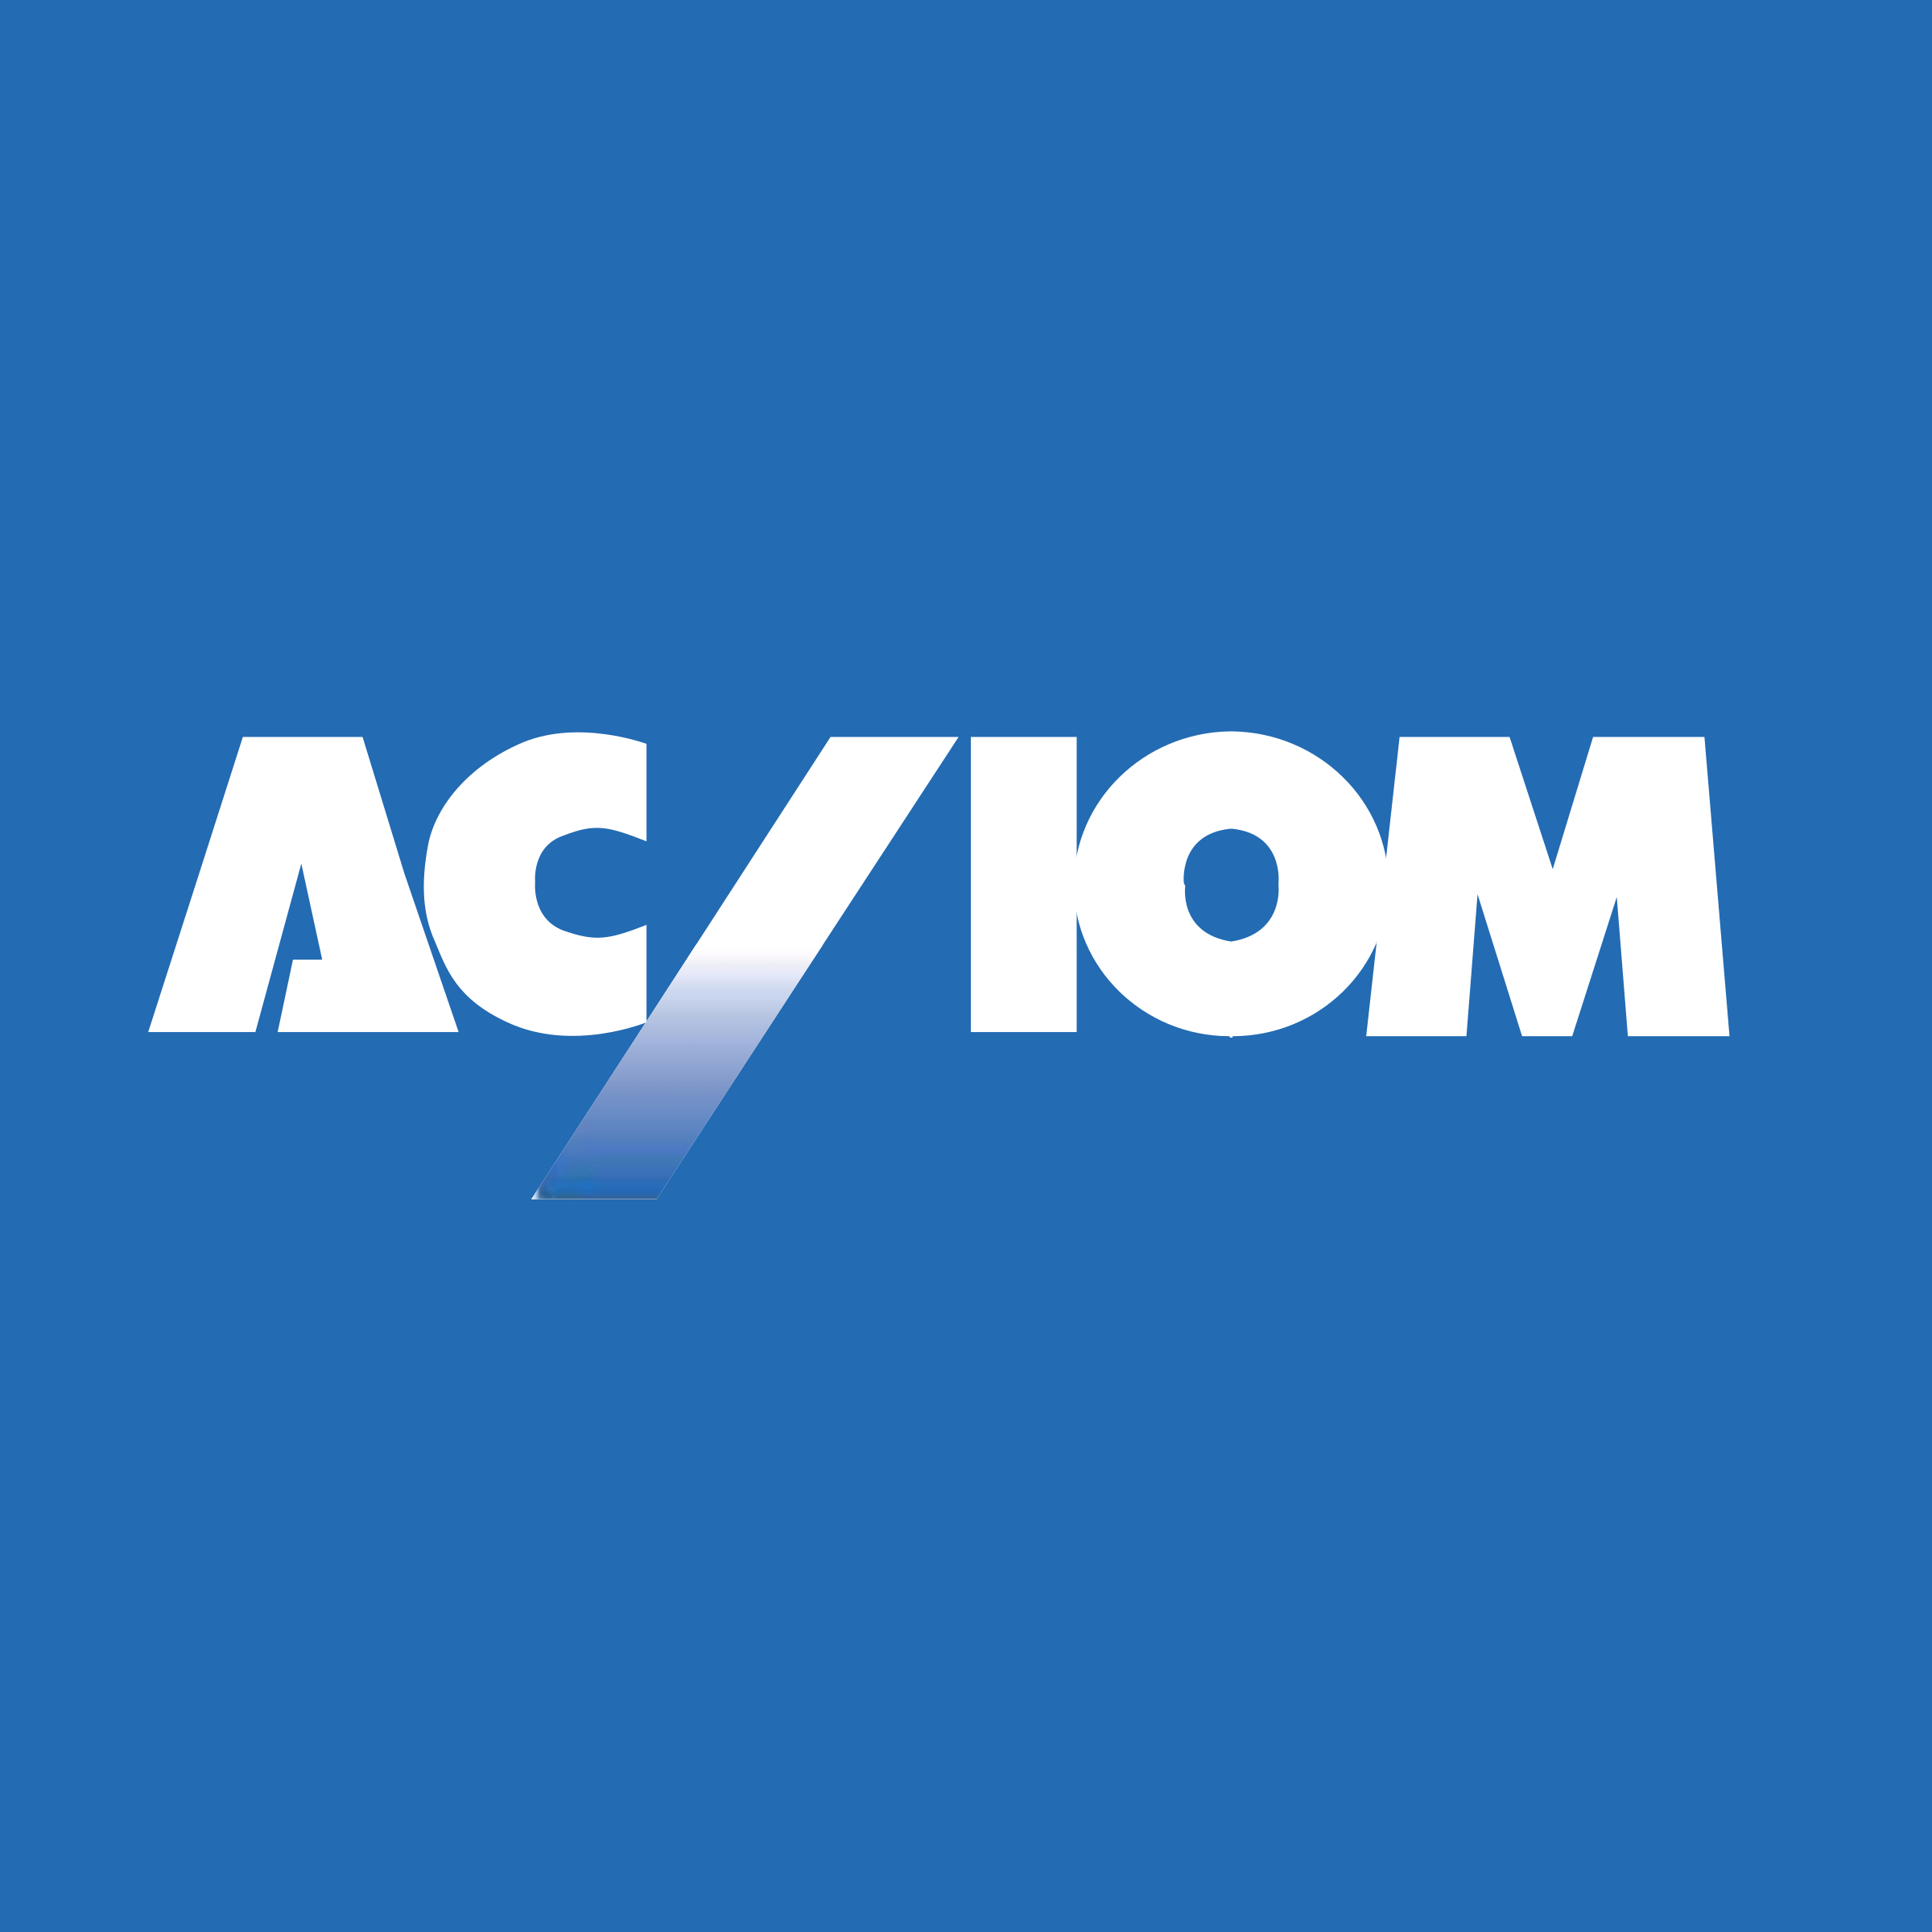 Acxiom Logo - Acxiom Logo PNG Transparent & SVG Vector